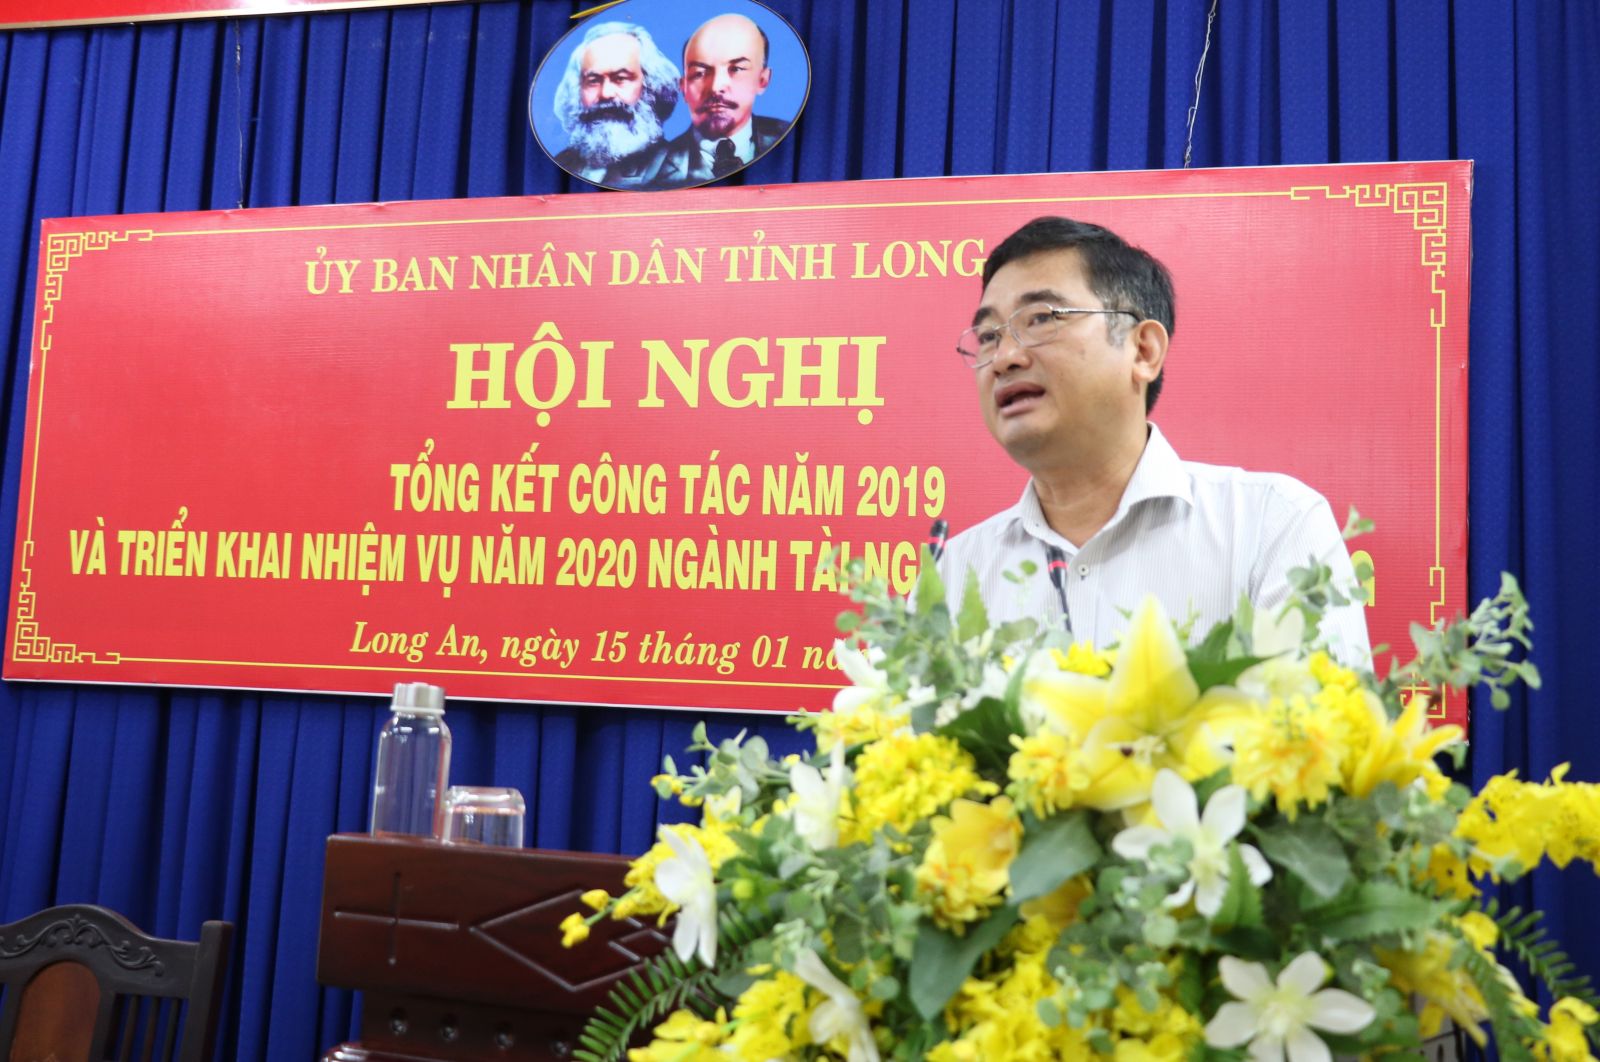 Phó Chủ tịch UBND tỉnh - Phạm Văn Cảnh chỉ đạo ngành Tài nguyên và Môi trường tiếp tục phấn đấu hoàn thành nhiệm vụ trong năm mới